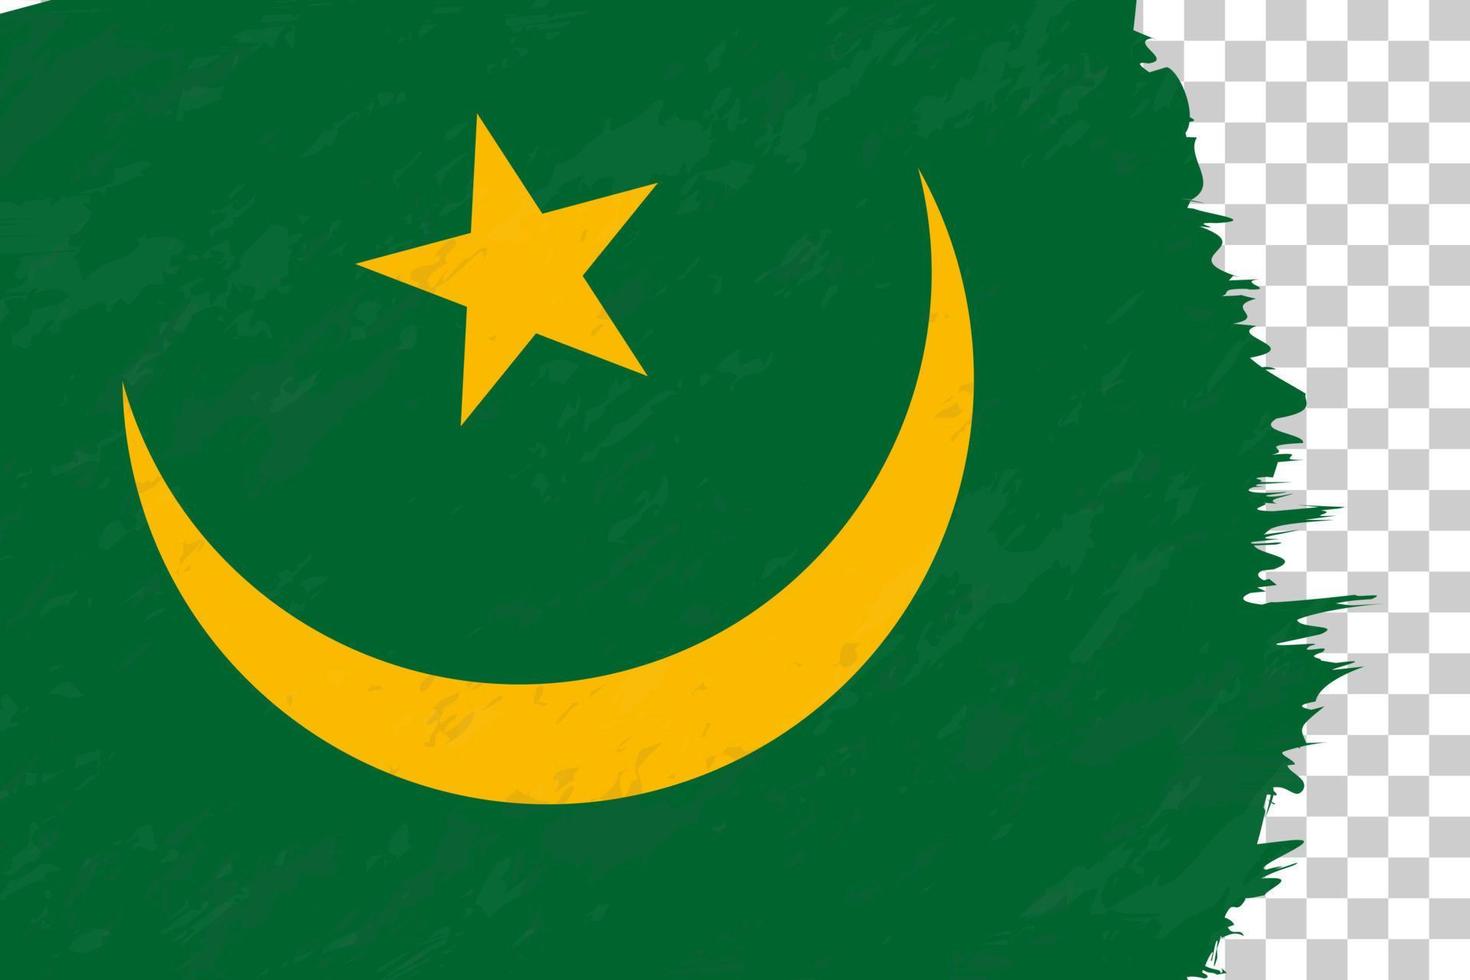 orizzontale astratto grunge spazzolato bandiera della mauritania sulla griglia trasparente. vettore